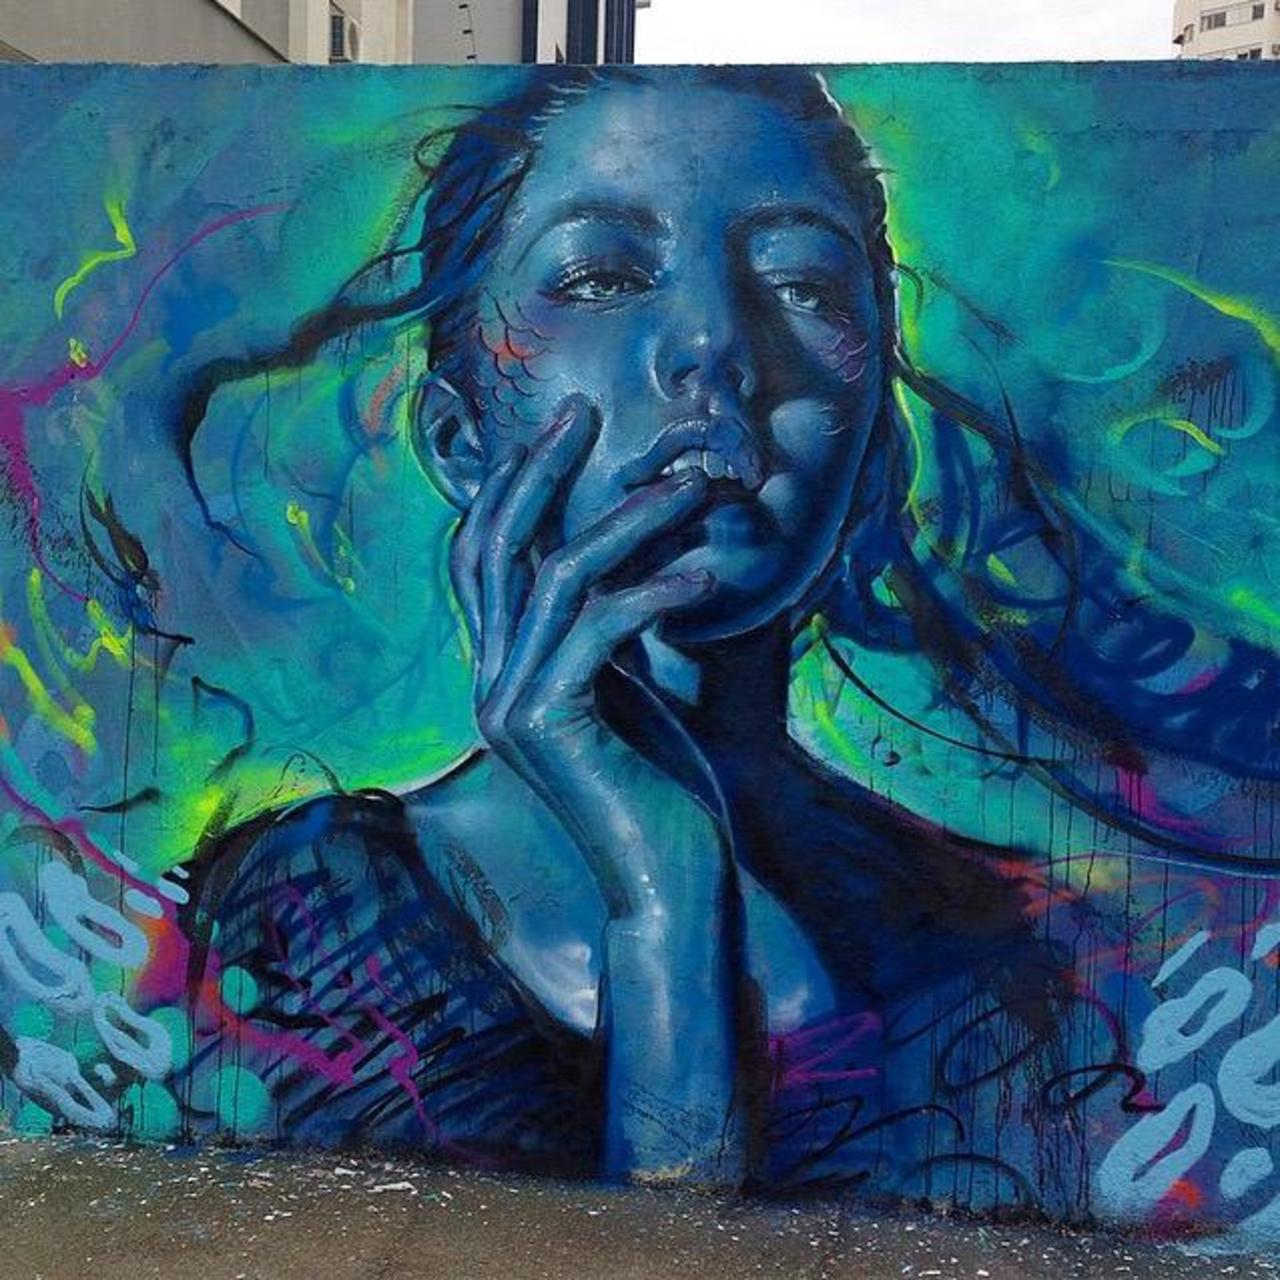 Thiago Valdi new Street Art piece titled 'Day Dreamer'

#art #mural #graffiti #streetart http://t.co/RQFoCV2xTI